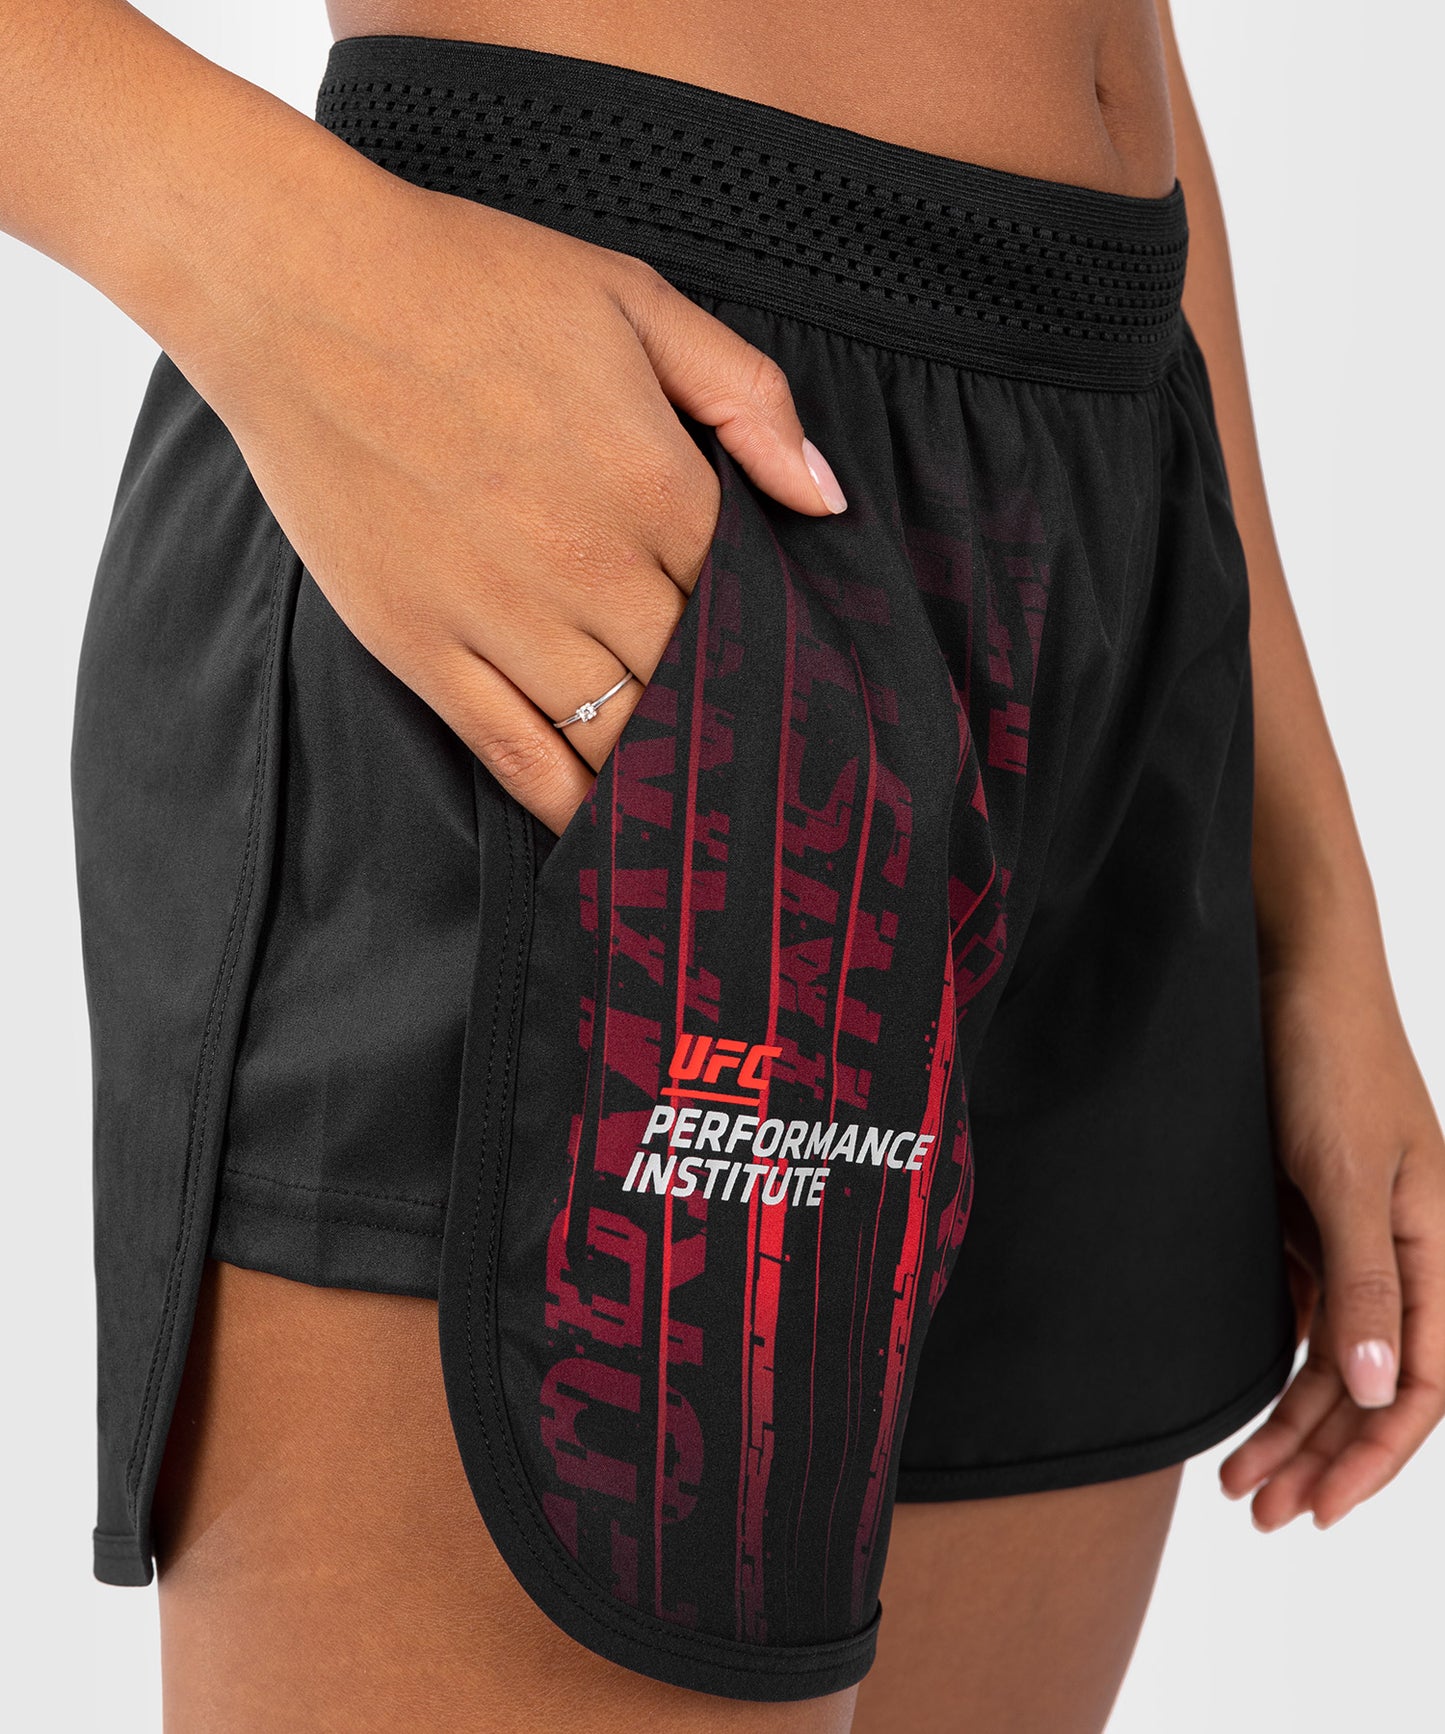 Short de Performance pour Femmes UFC Venum Performance Institute 2.0 - Noir/Rouge - Shorts de fitness